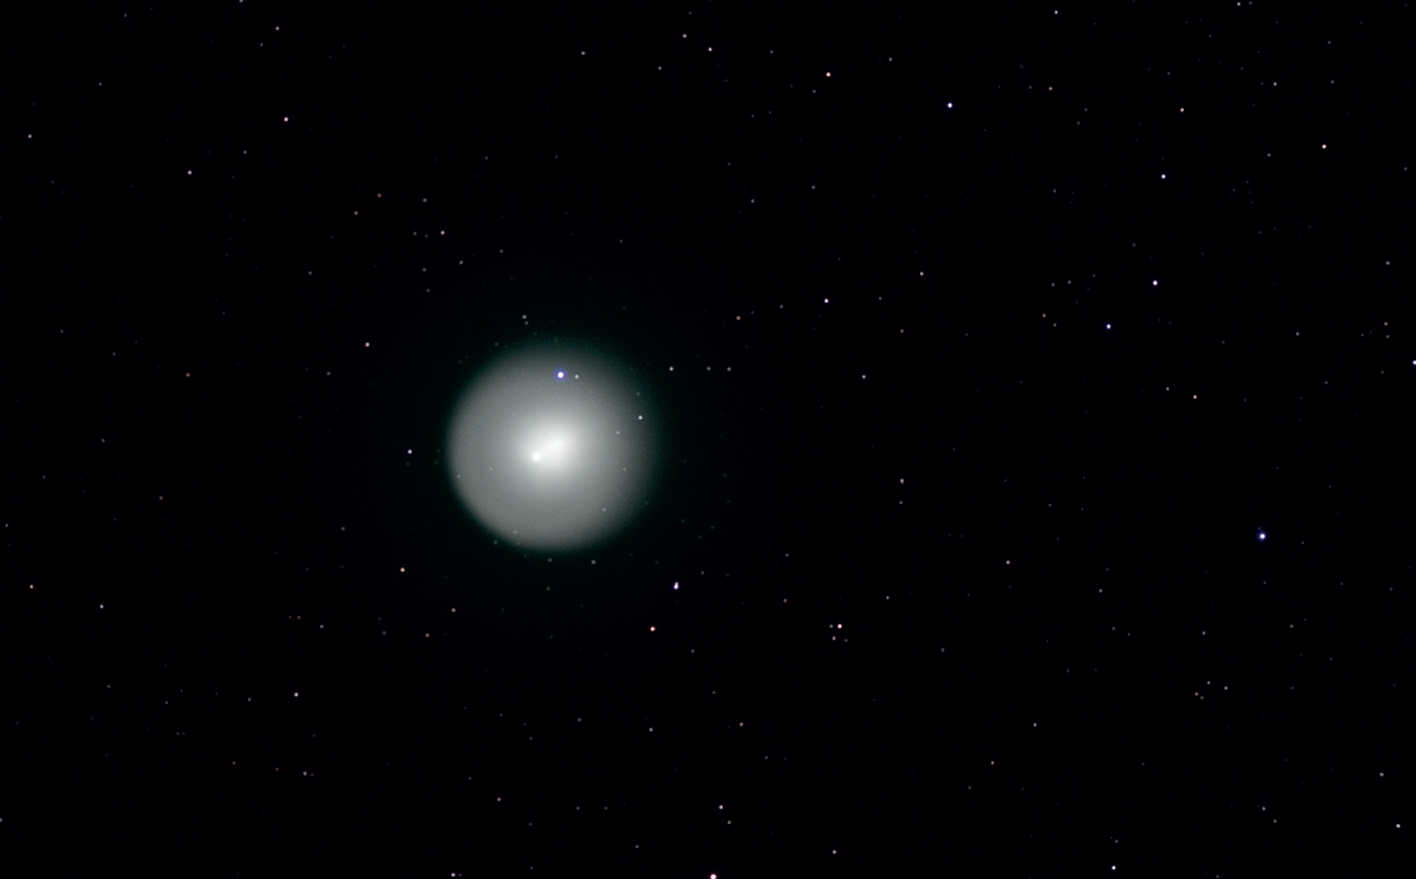 W roku 2007 jesienne niebo zdominowała kometa okresowa 17P (Holmes). Wyraźny kształt i rozmiar głowy komety pokazuje to monochromatyczne zdjęcie, wykonane 1.11.2007 za pomocą chłodzonej kamery CCD na Takahashi FS-102. Mimo że kolorowe zdjęcia pokazują typową zielonkawą barwę komet, to zdjęcie pokazuje szczególny urok obrazu monochromatycznego. U. Dittler